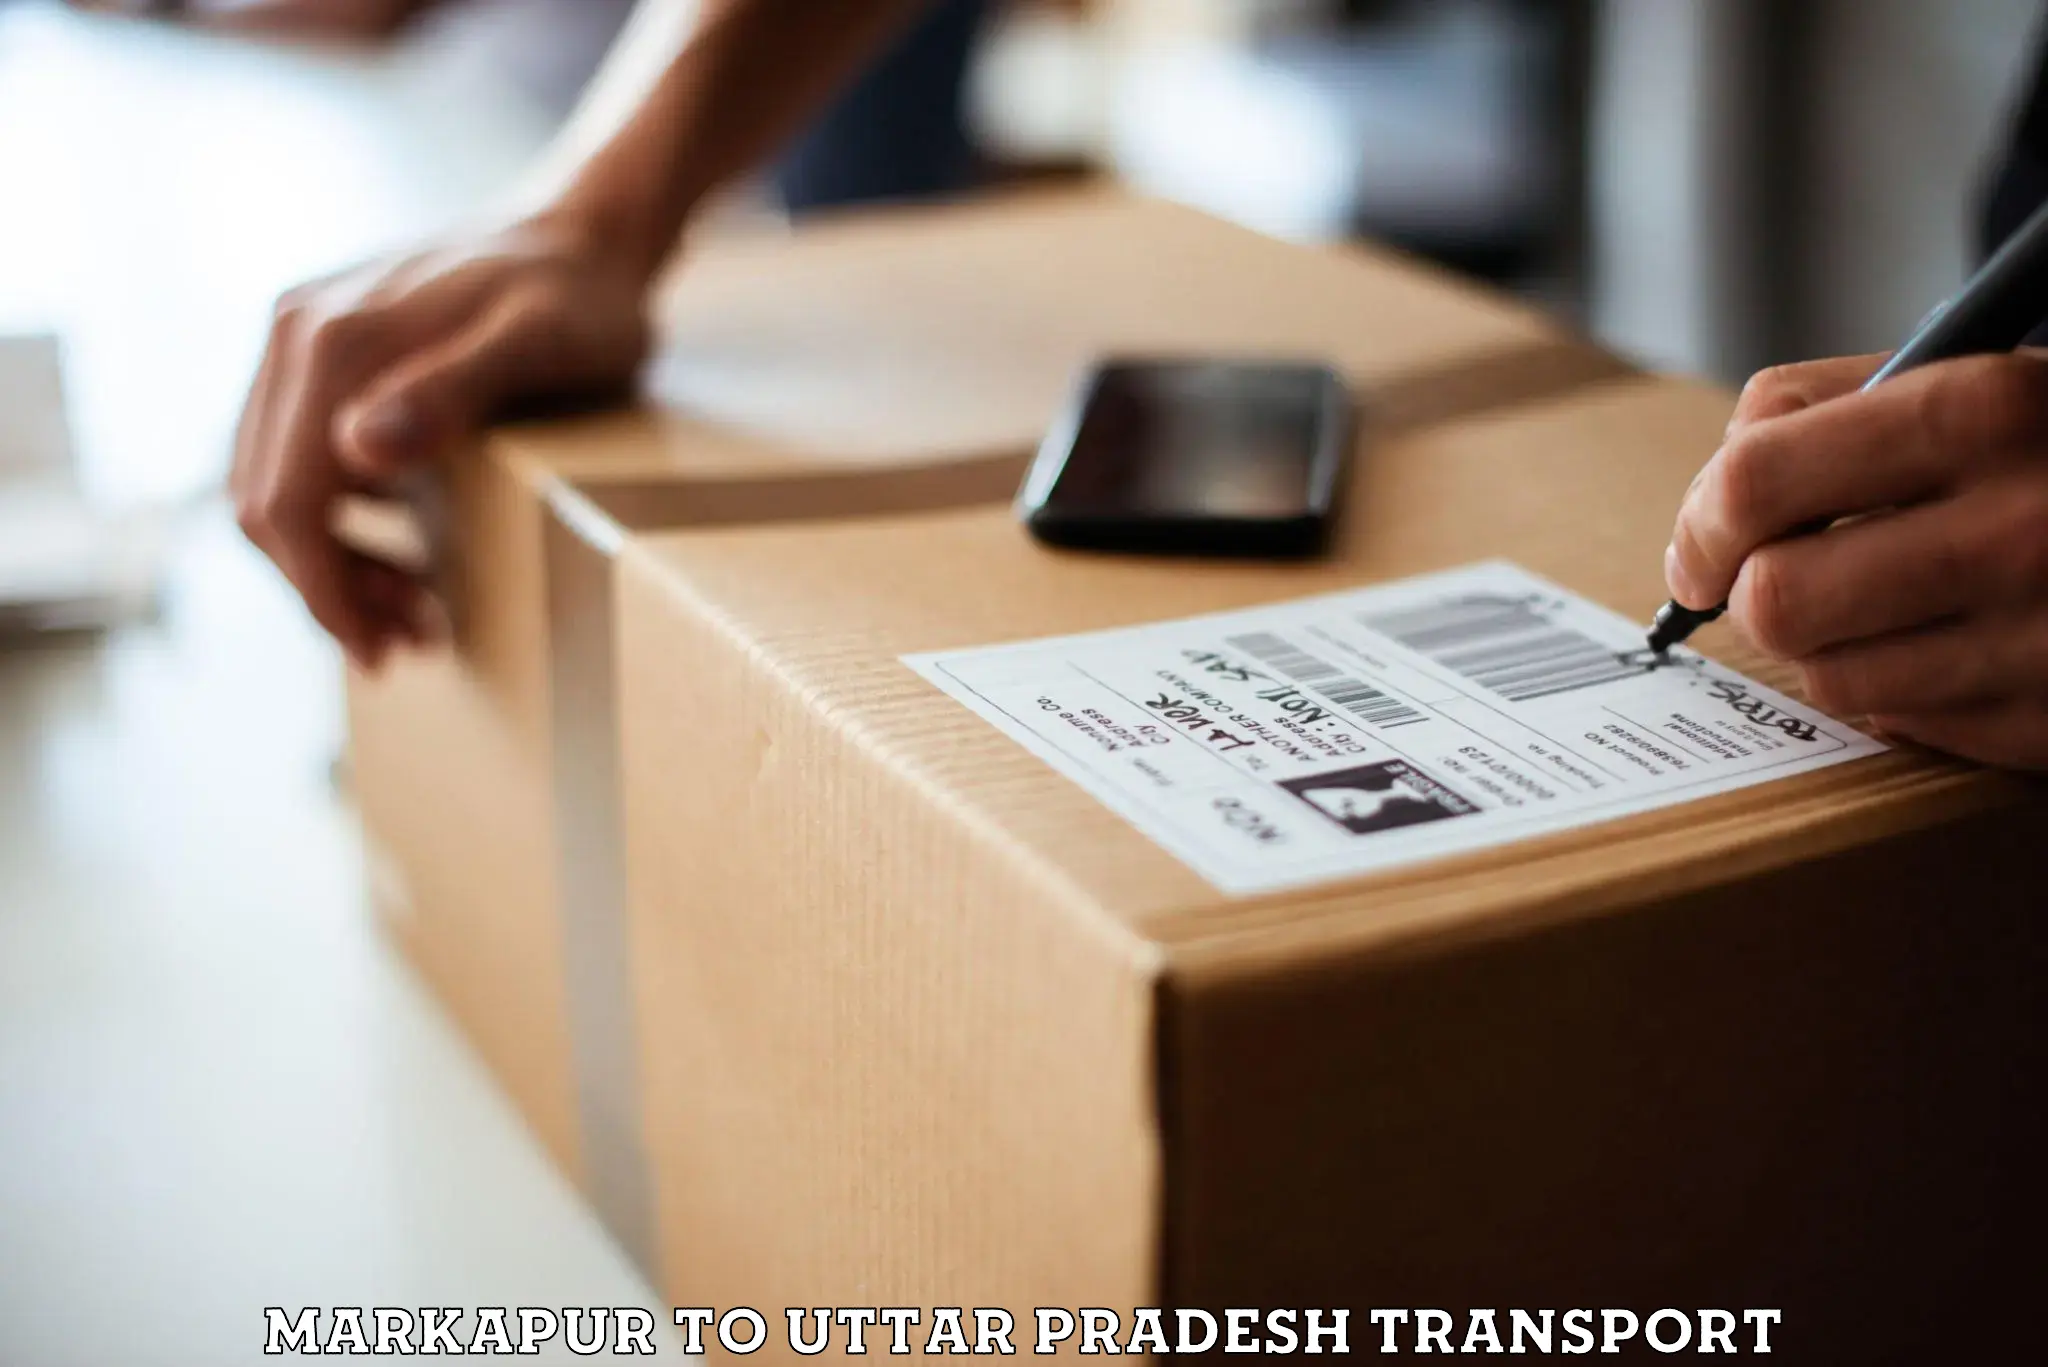 Daily parcel service transport Markapur to Uttar Pradesh